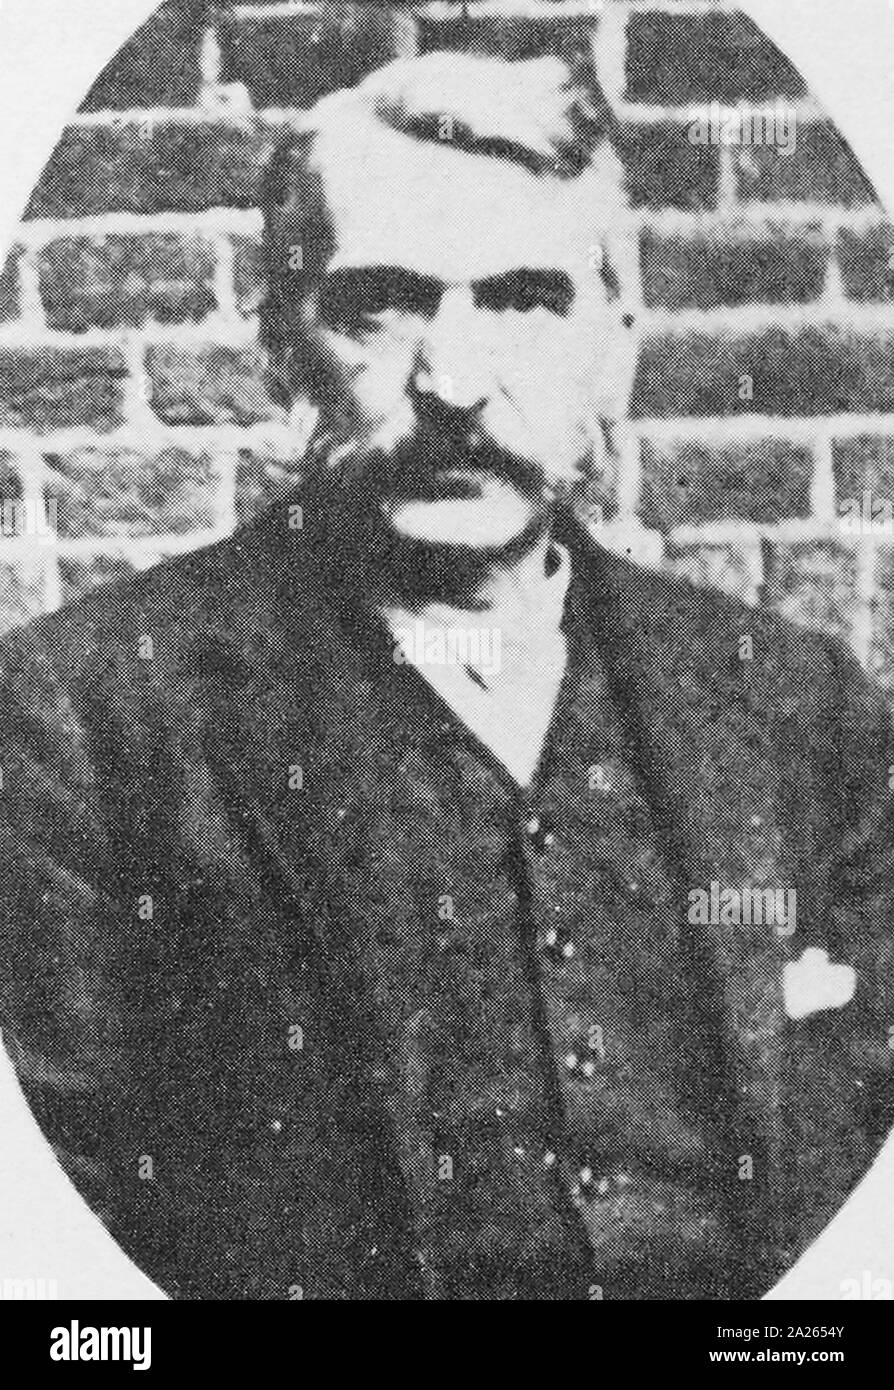 Adam (1844 - 8. Januar 1902) war ein deutsch-amerikanischer Krimineller. Scotland Yard Detective Robert Anderson ihm den Spitznamen "der Napoleon von der kriminellen Welt" (wegen seiner Körpergröße). Er ist die Inspiration für Sir Arthur Conan Doyle's fiktive Kriminellen mastermind James Moriarty in der Sherlock Holmes Serie angesehen Stockfoto